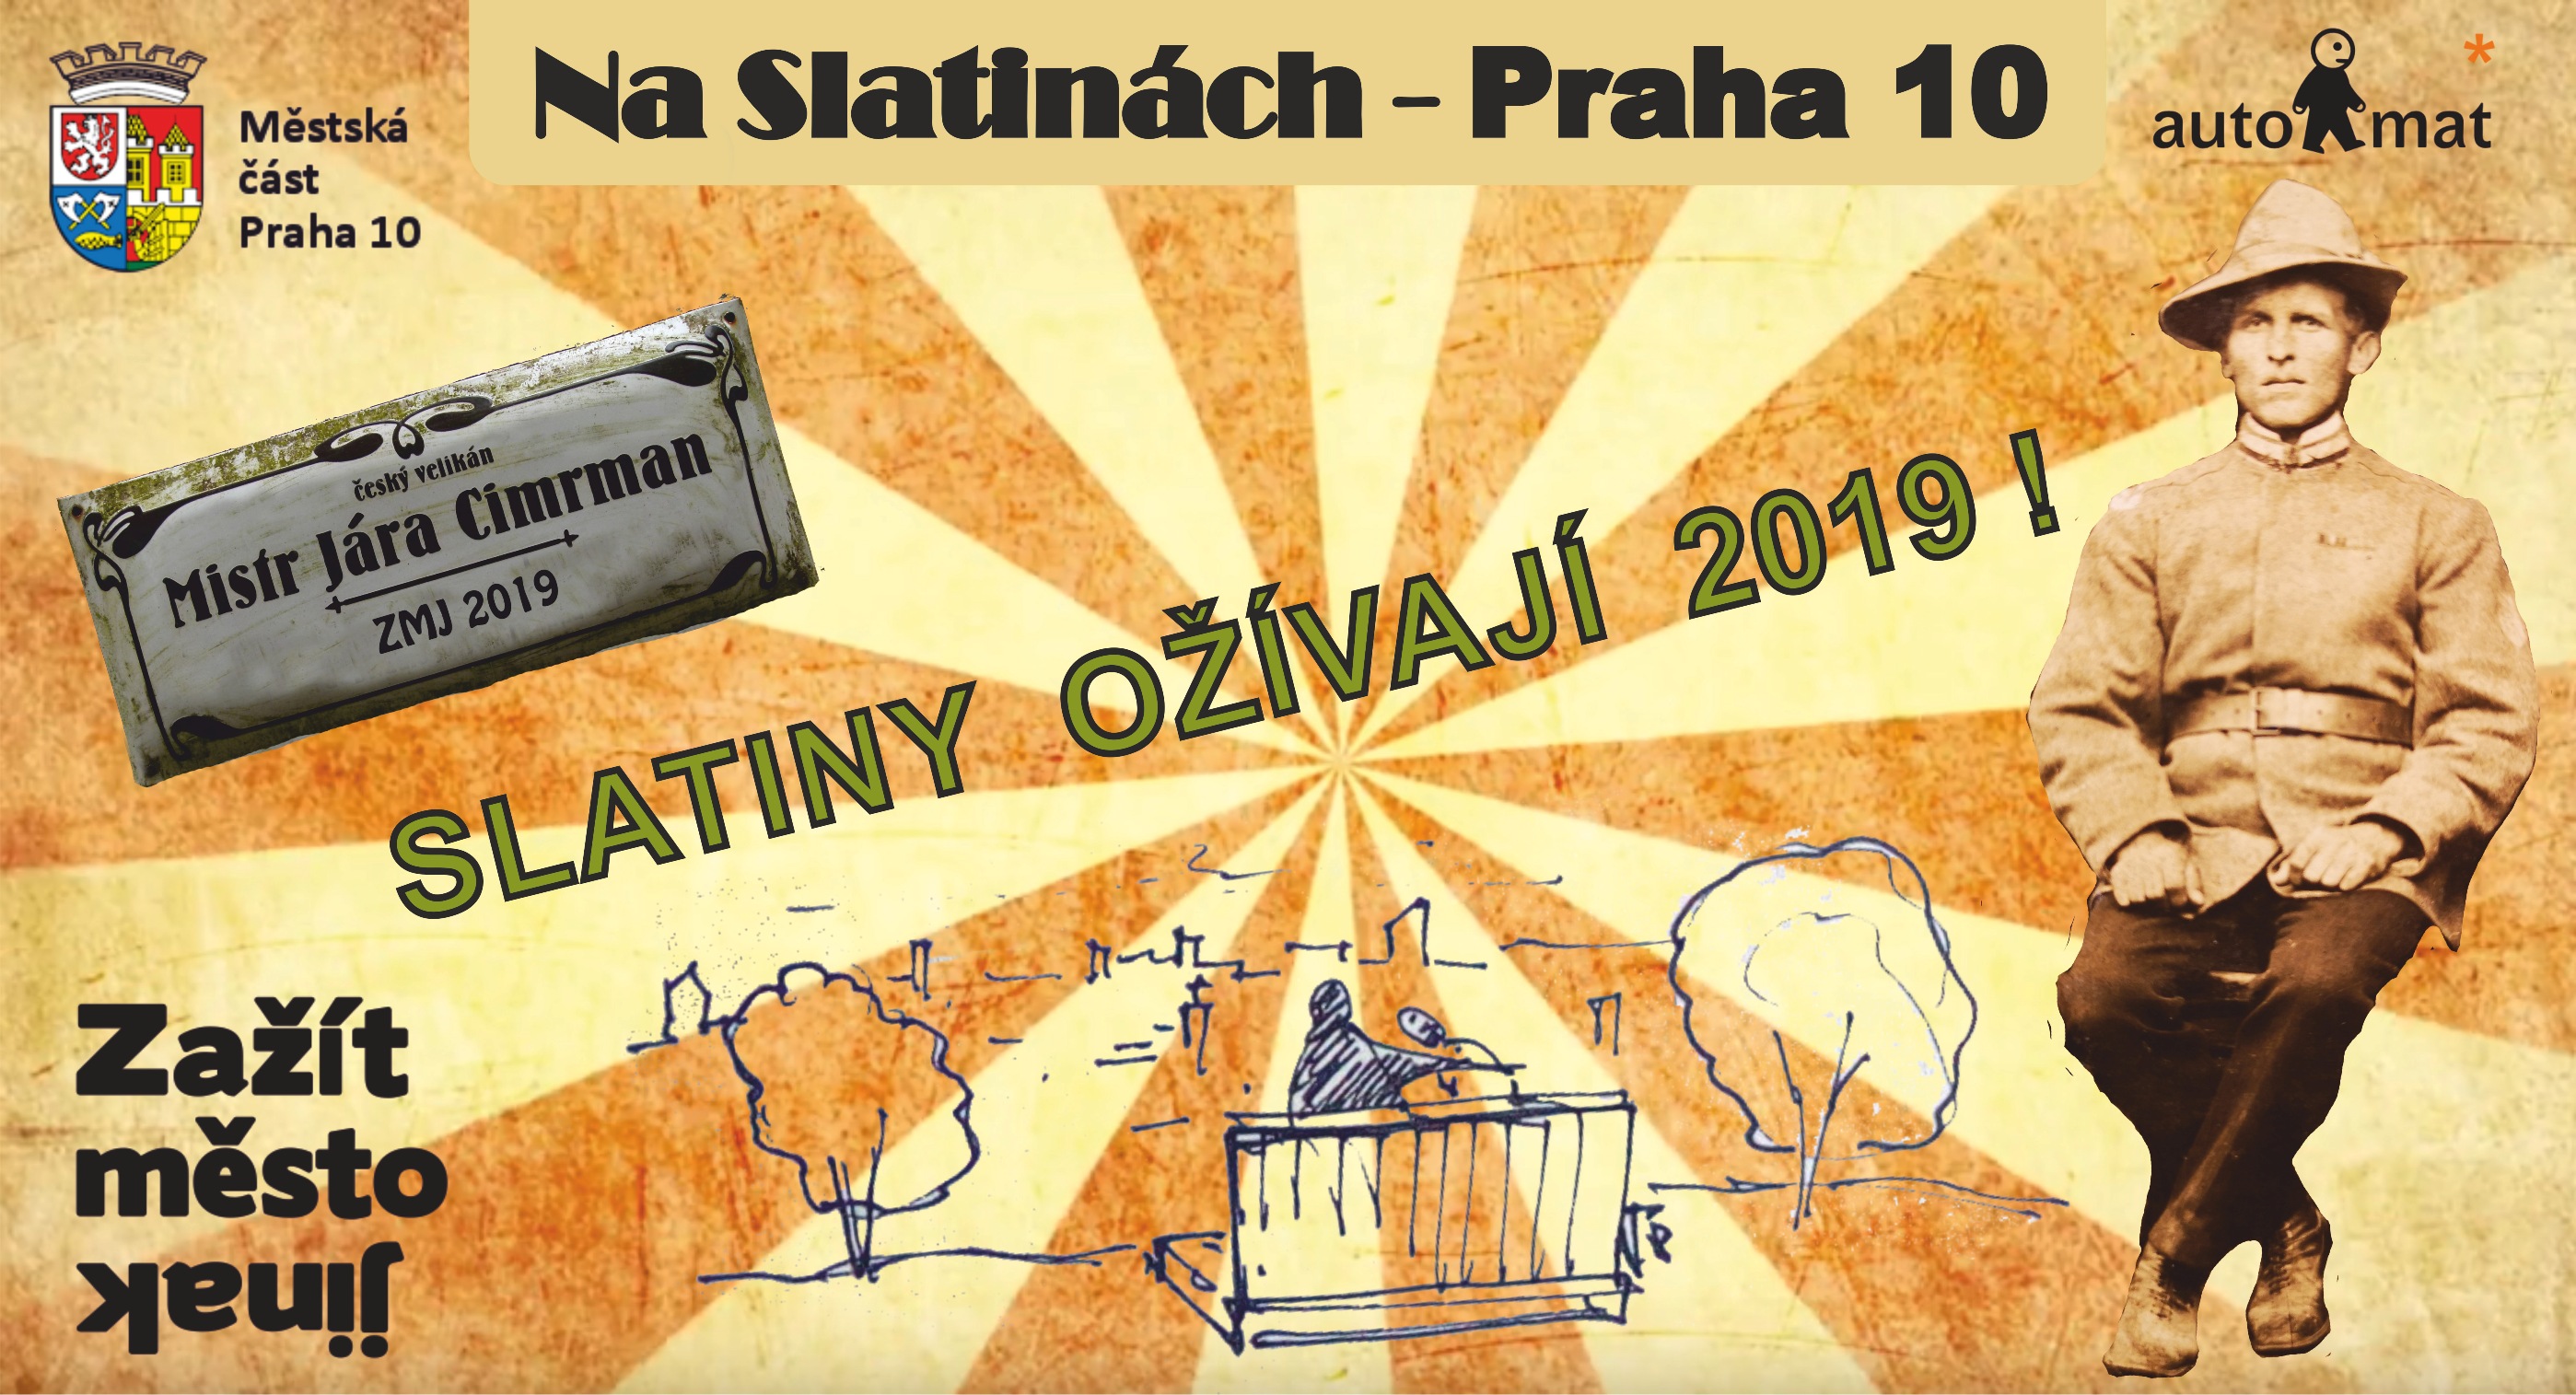 ZMJ Na Slatinách -Praha 2019